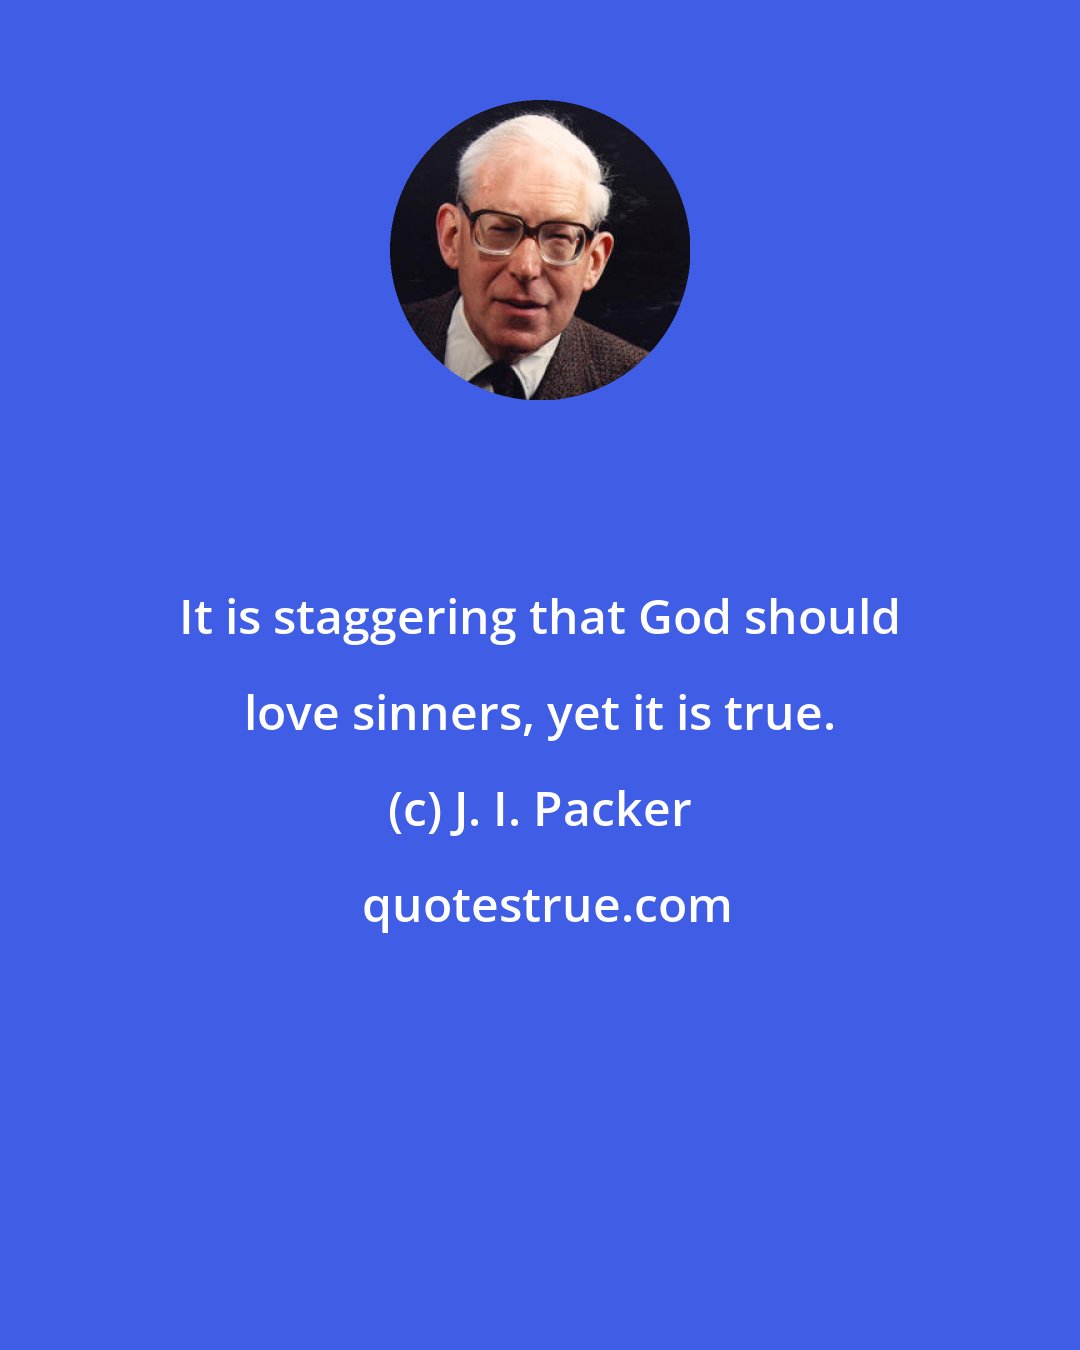 J. I. Packer: It is staggering that God should love sinners, yet it is true.